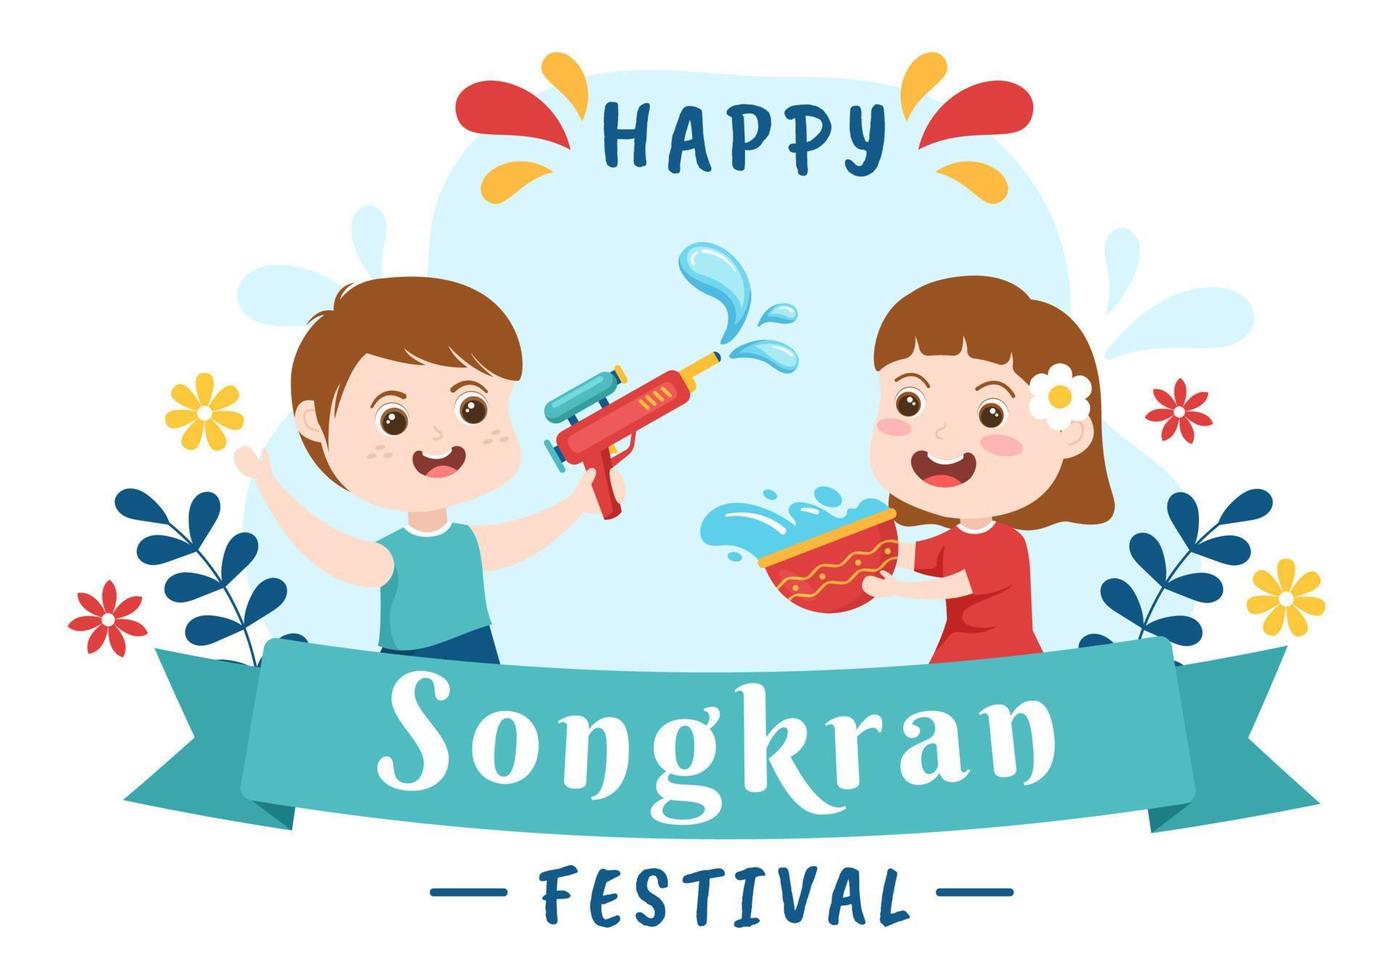 gelukkige songkran festival dag hand getekende cartoon afbeelding met schattige kleine kinderen die waterpistool spelen in thailand viering in vlakke stijl achtergrond vector